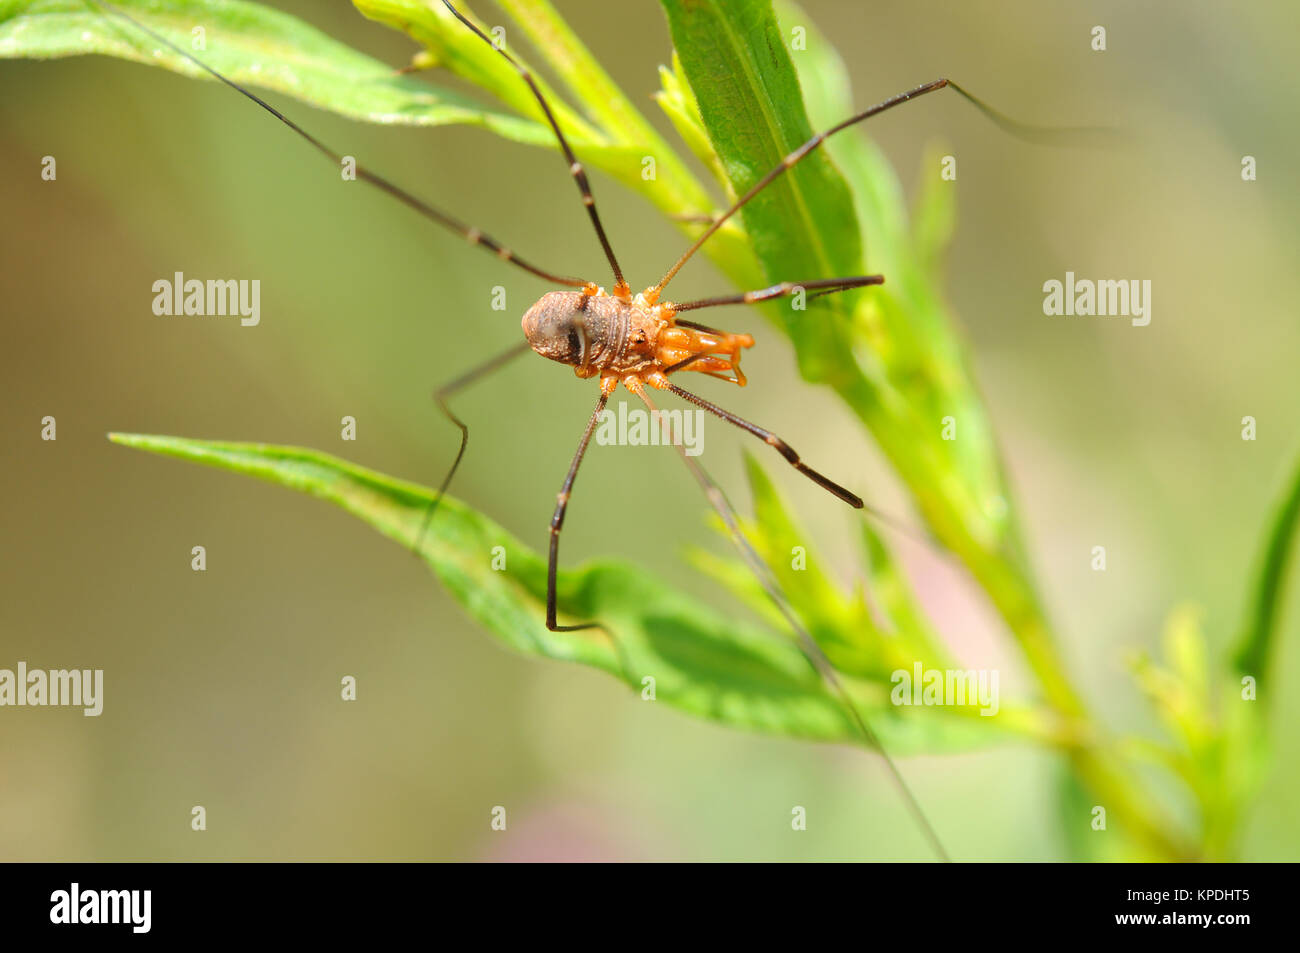 Daddy Long-gambe Spider - Vista dall'alto di un daddy long-gambe spider (chiamato anche Harvestmen, capostipite di lungo le gambe, Opilione, Phalangida) nel selvaggio. Foto Stock